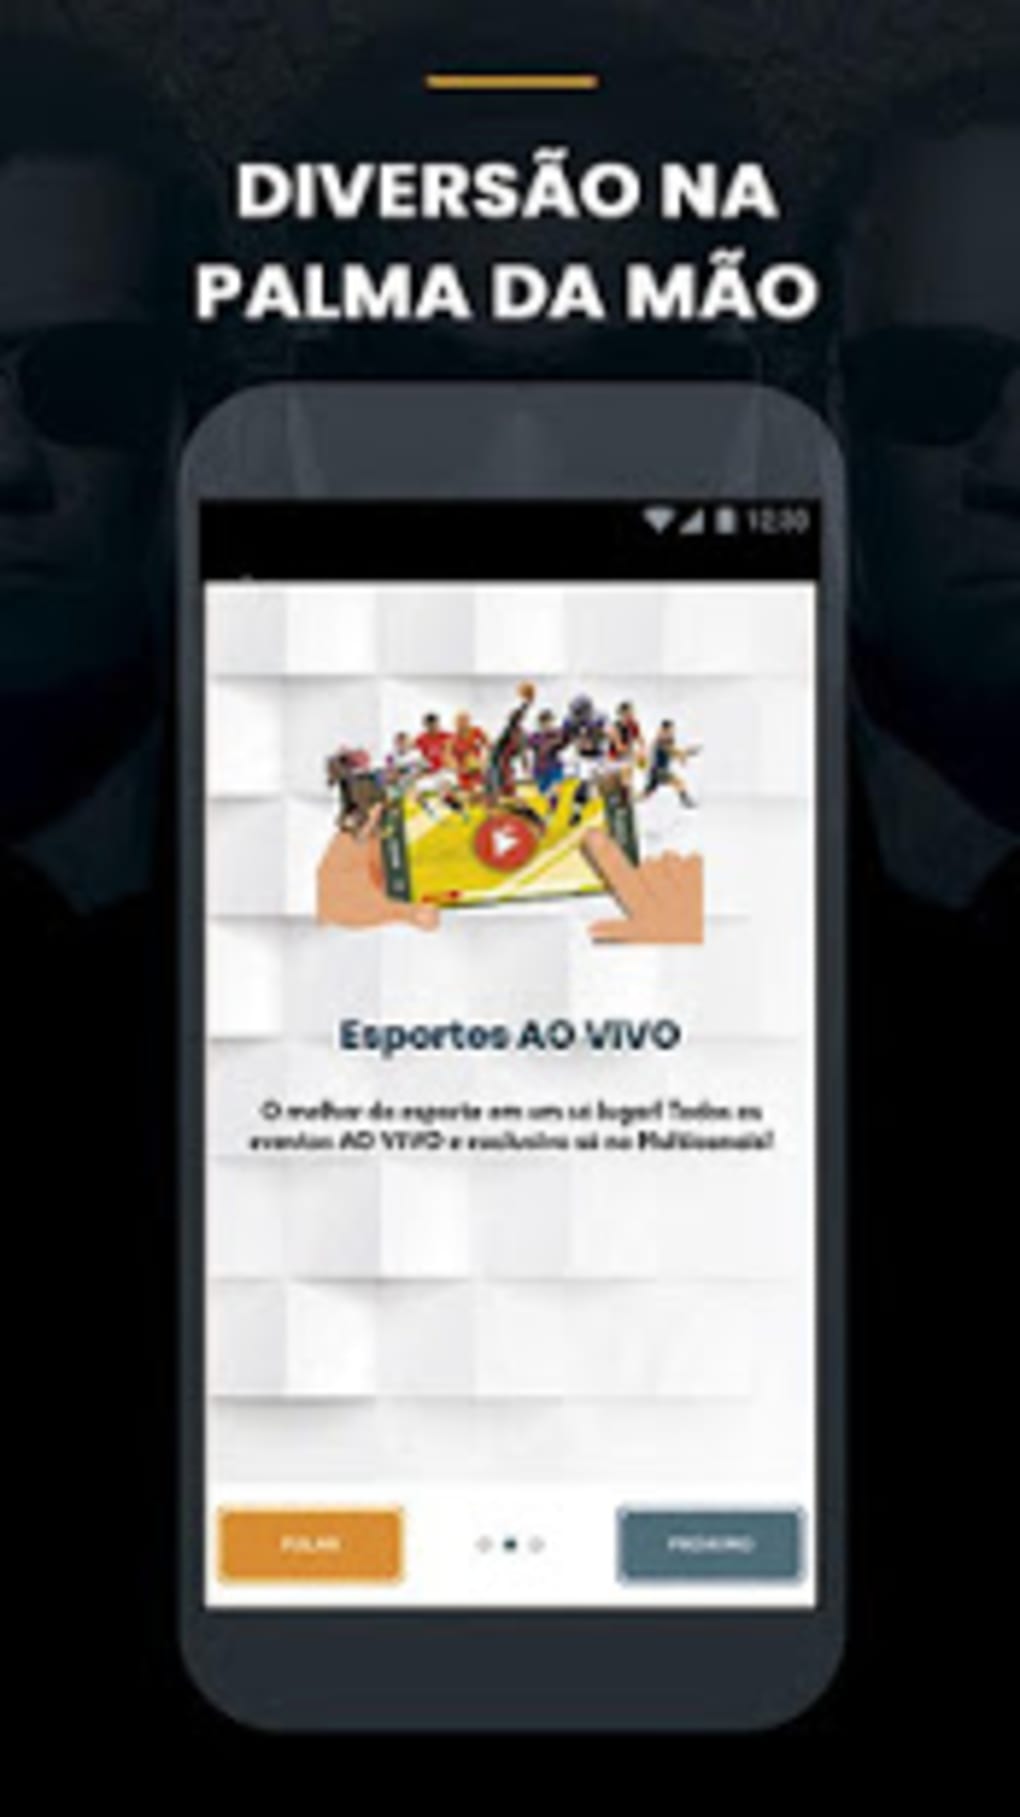 Multicanais TV  App Futebol Ao Vivo Grátis e Sem Anúncios